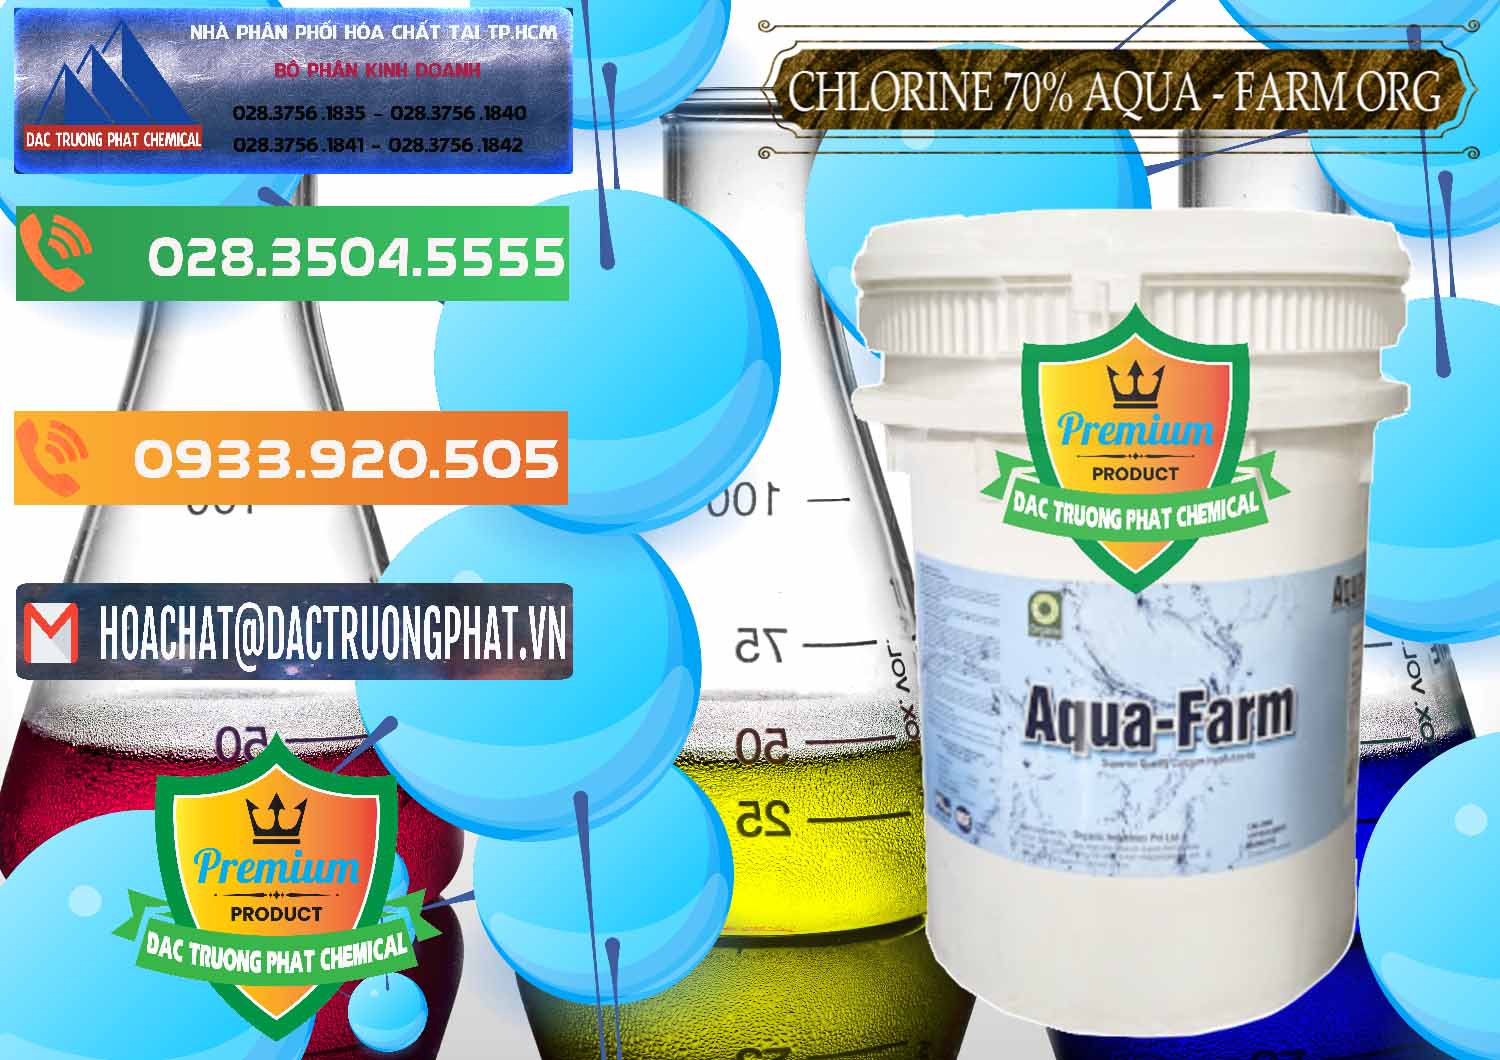 Nơi cung cấp _ bán Chlorine – Clorin 70% Aqua - Farm ORG Organic Ấn Độ India - 0246 - Công ty chuyên phân phối và bán hóa chất tại TP.HCM - hoachatxulynuoc.com.vn